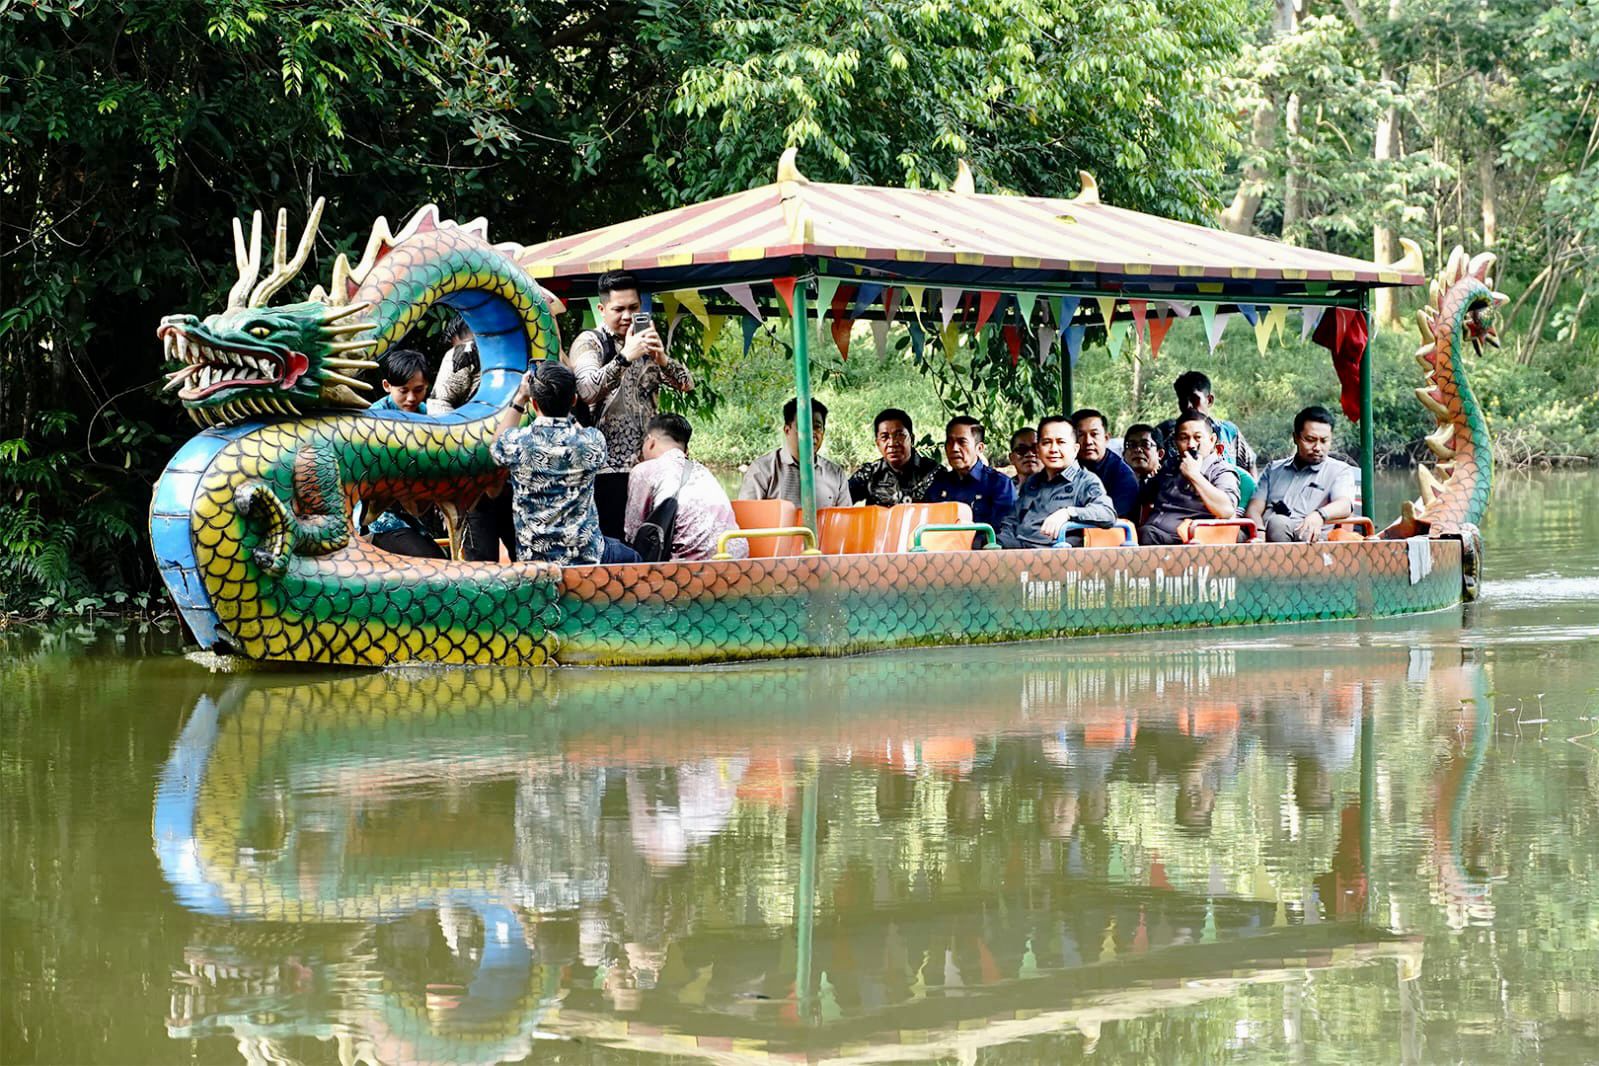 Pj Gubernur Sumsel dan Pj Walikota Palembang Tinjau Taman Kota dan Tempat Wisata